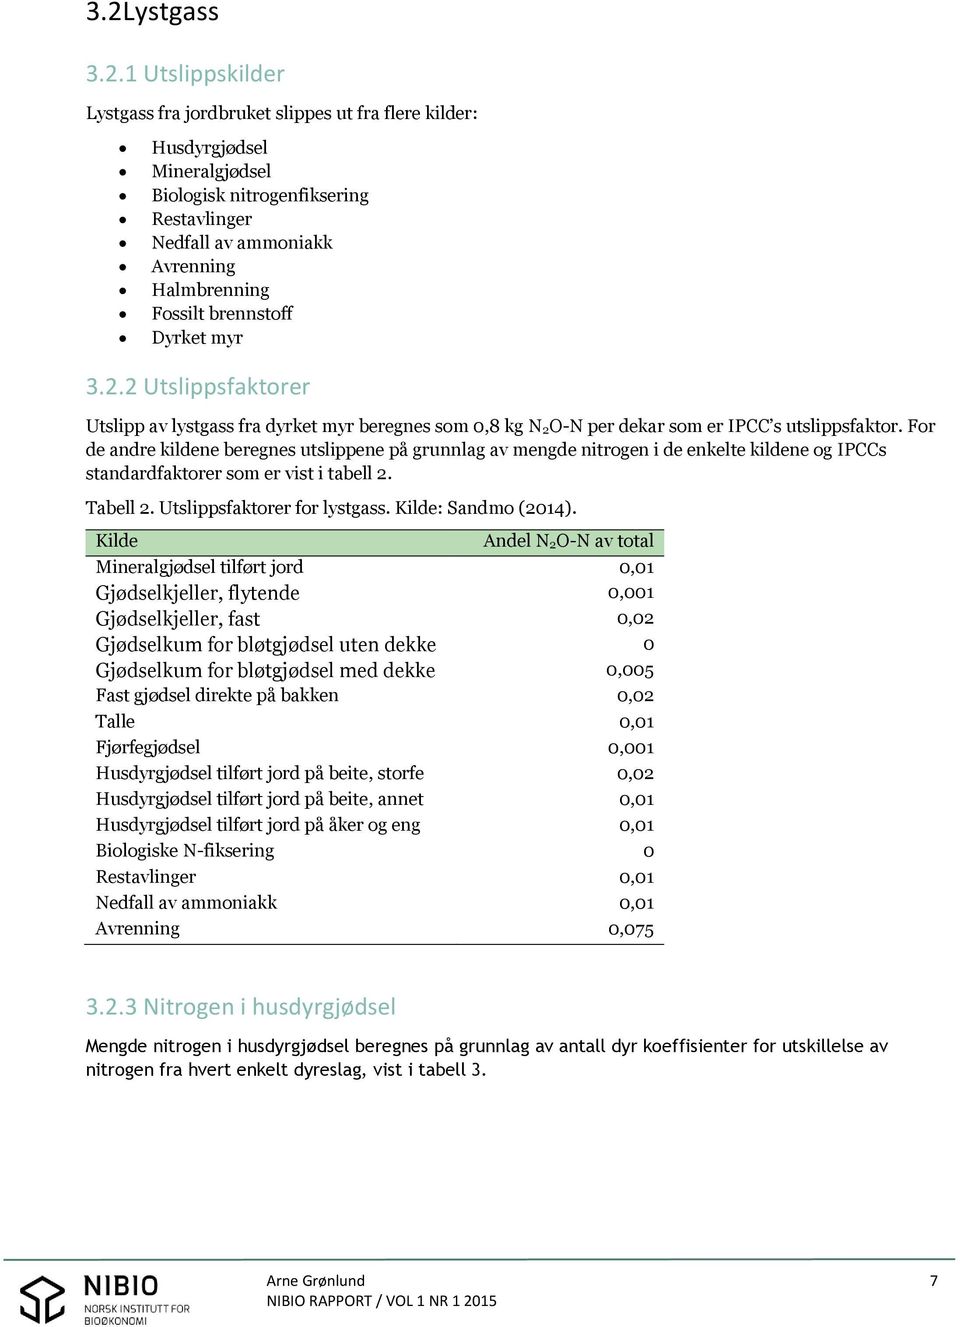 For de andre kildene beregnes utslippene på grunnlag av mengde nitrogen i de enkelte kildene og IPCCs standardfaktorer som er vist i tabell 2. Tabell 2. Utslippsfaktorer for lystgass.